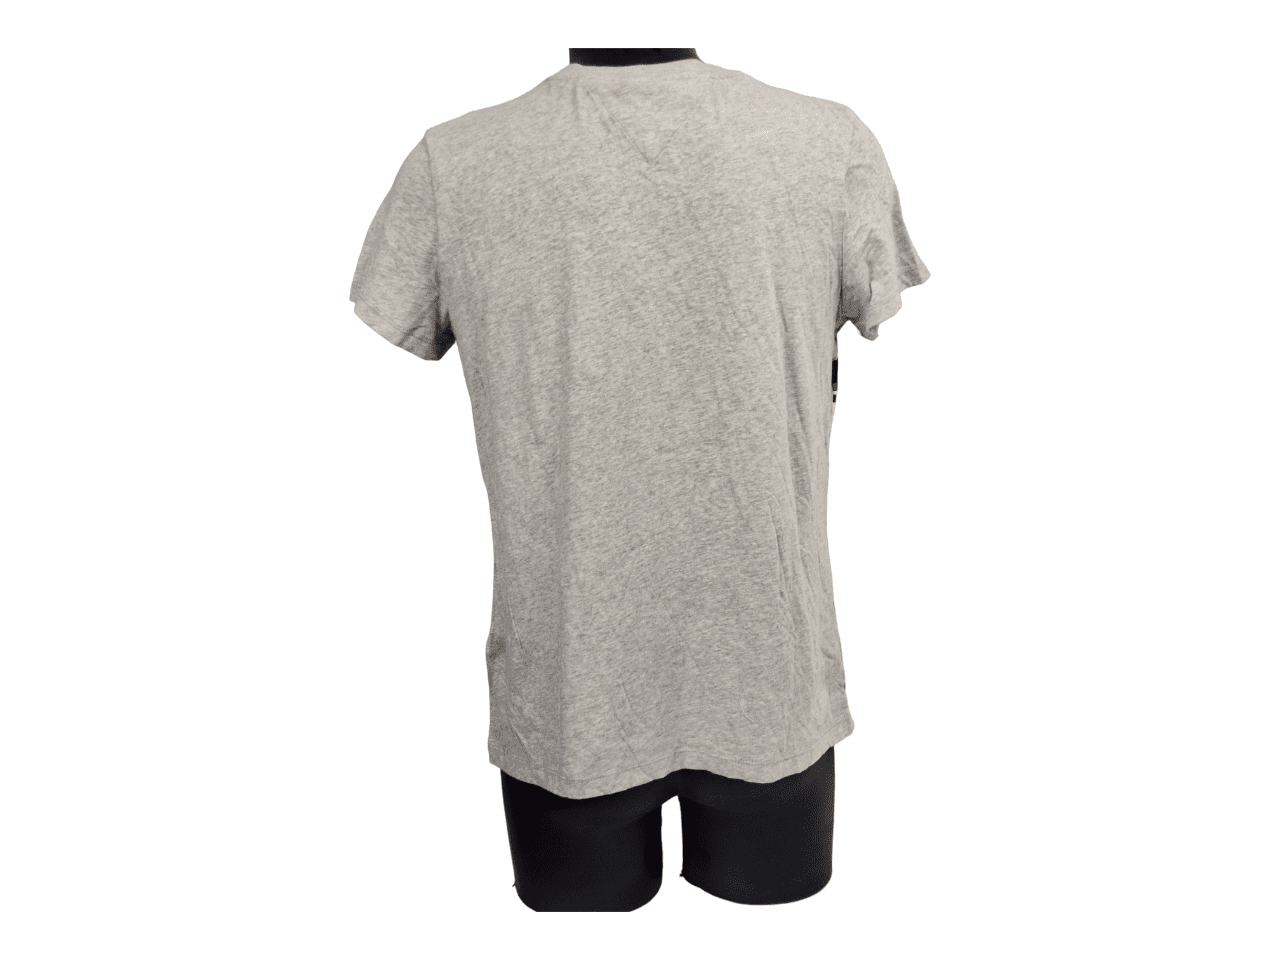 T-Shirt TOMMY JEANS gris chiné gros logo face devant taille XL